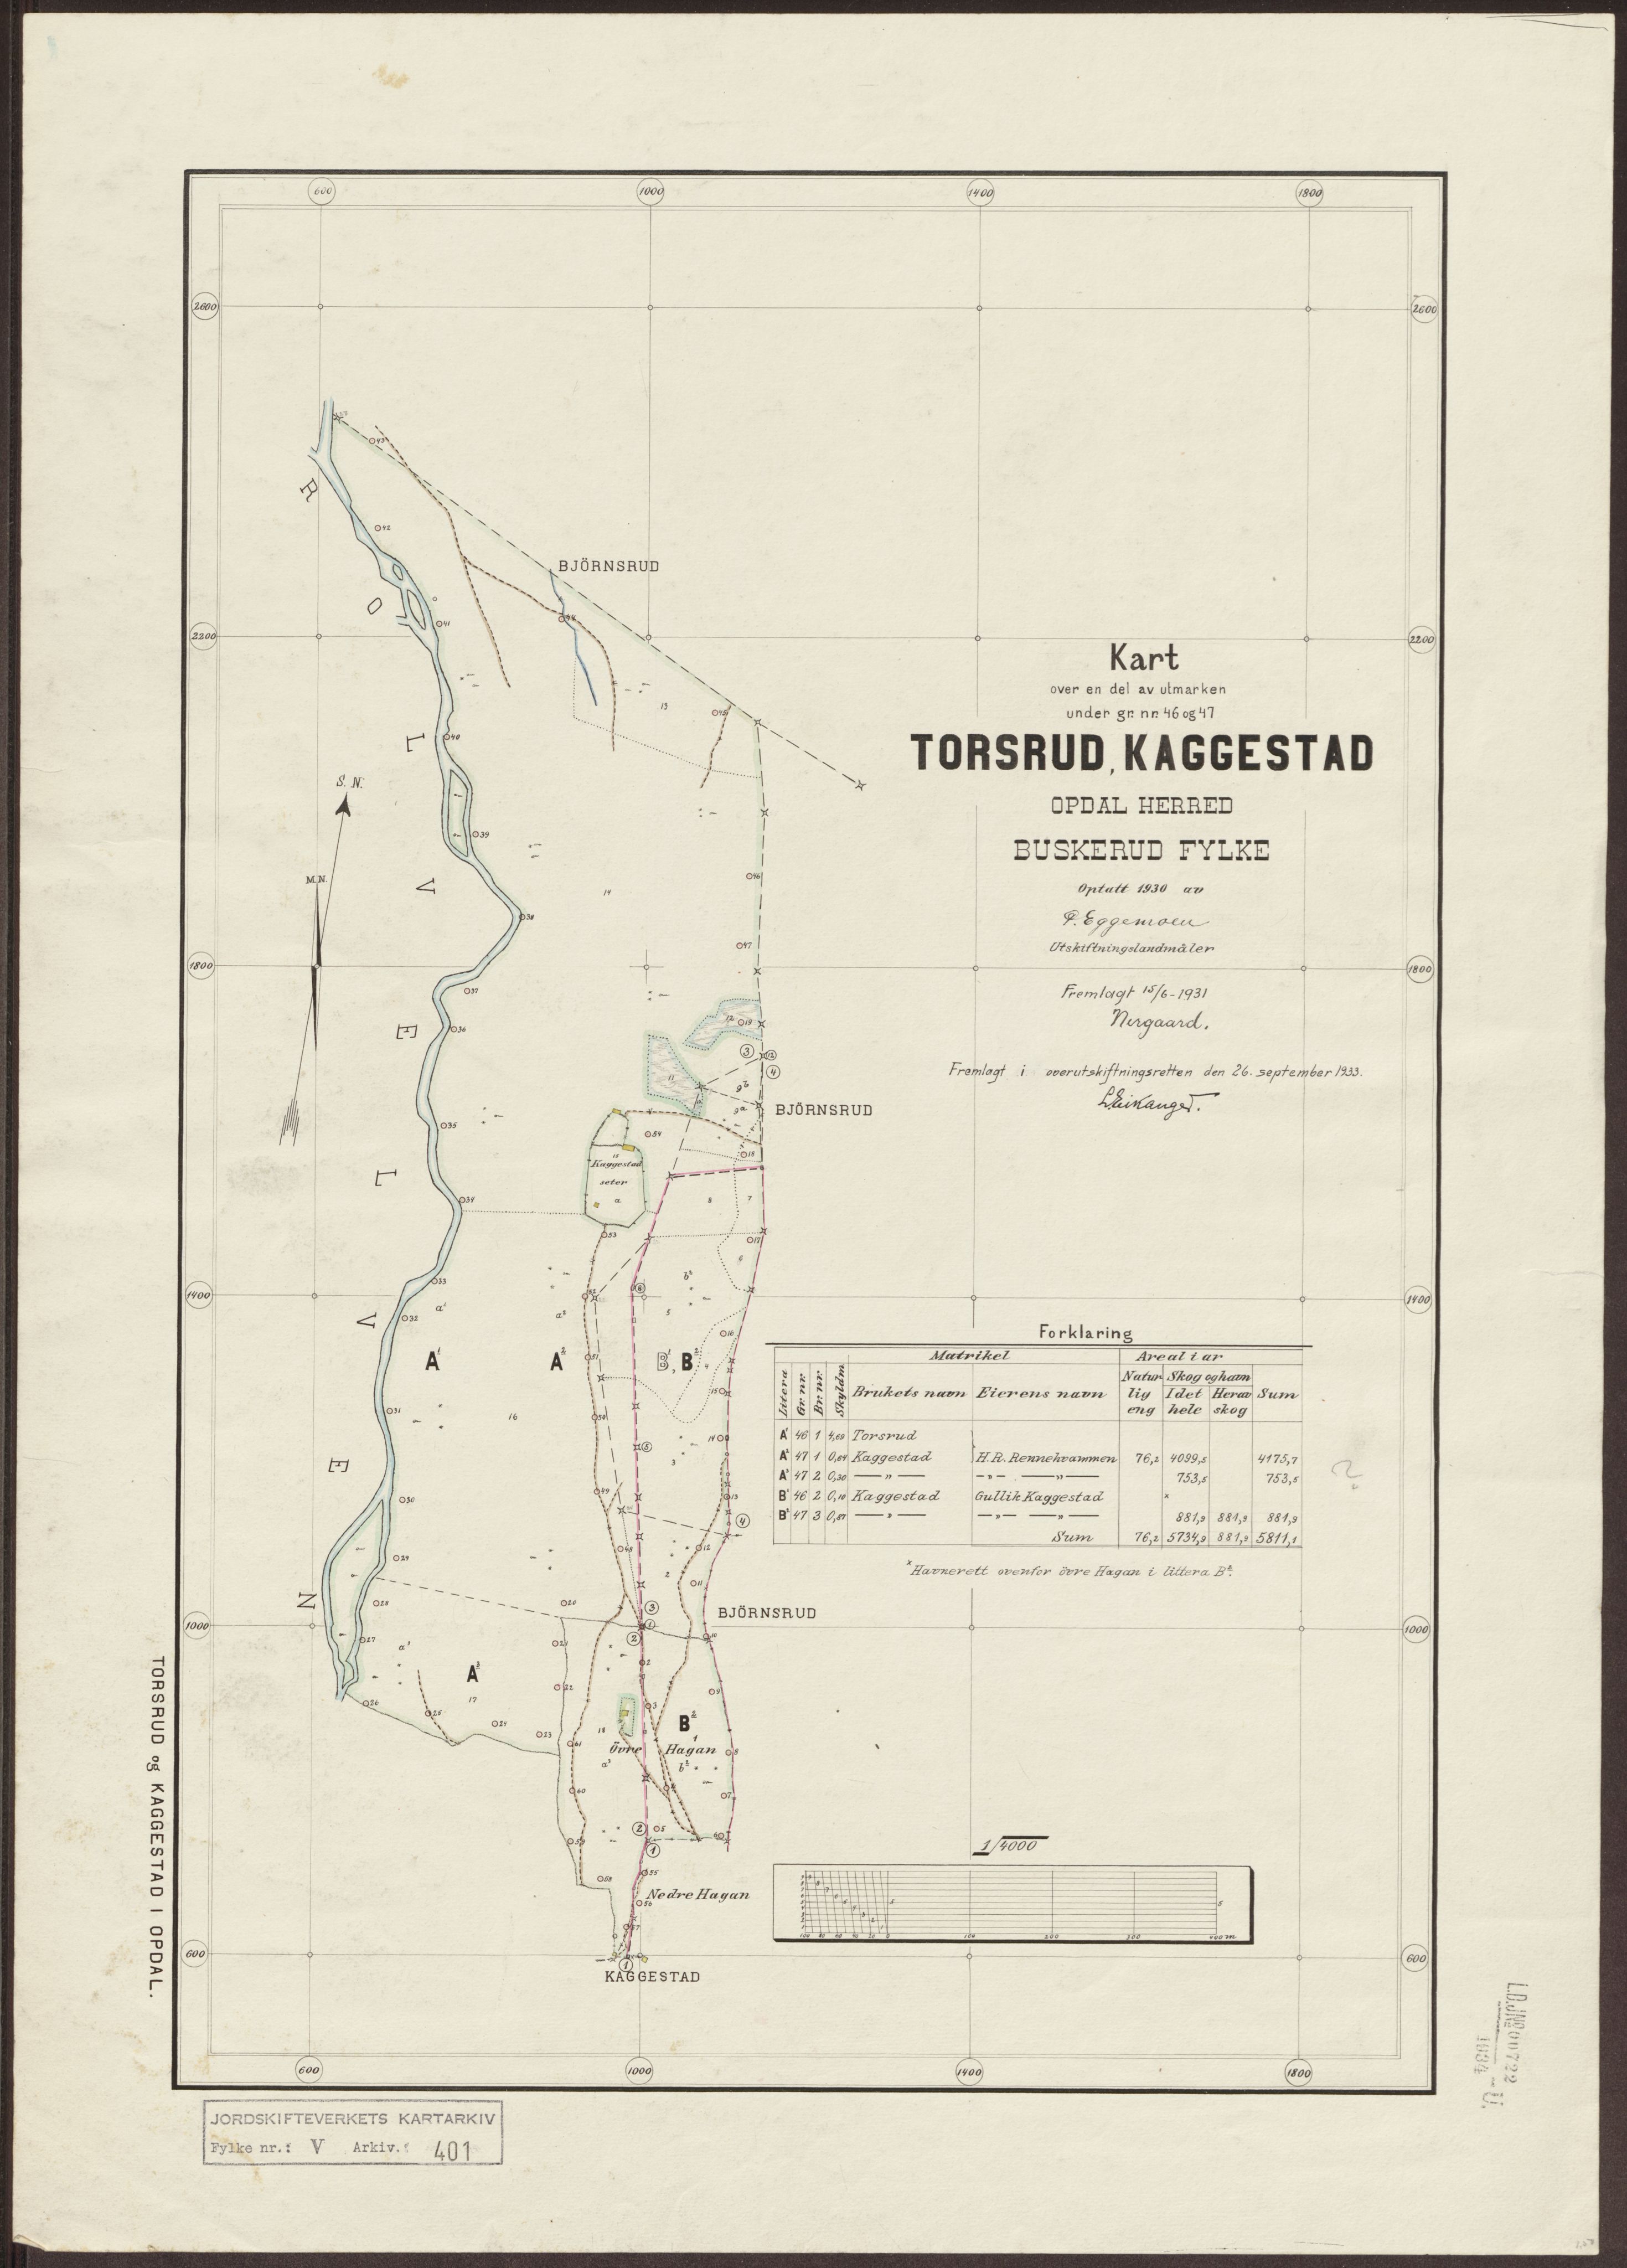 Jordskifteverkets kartarkiv, RA/S-3929/T, 1859-1988, s. 577